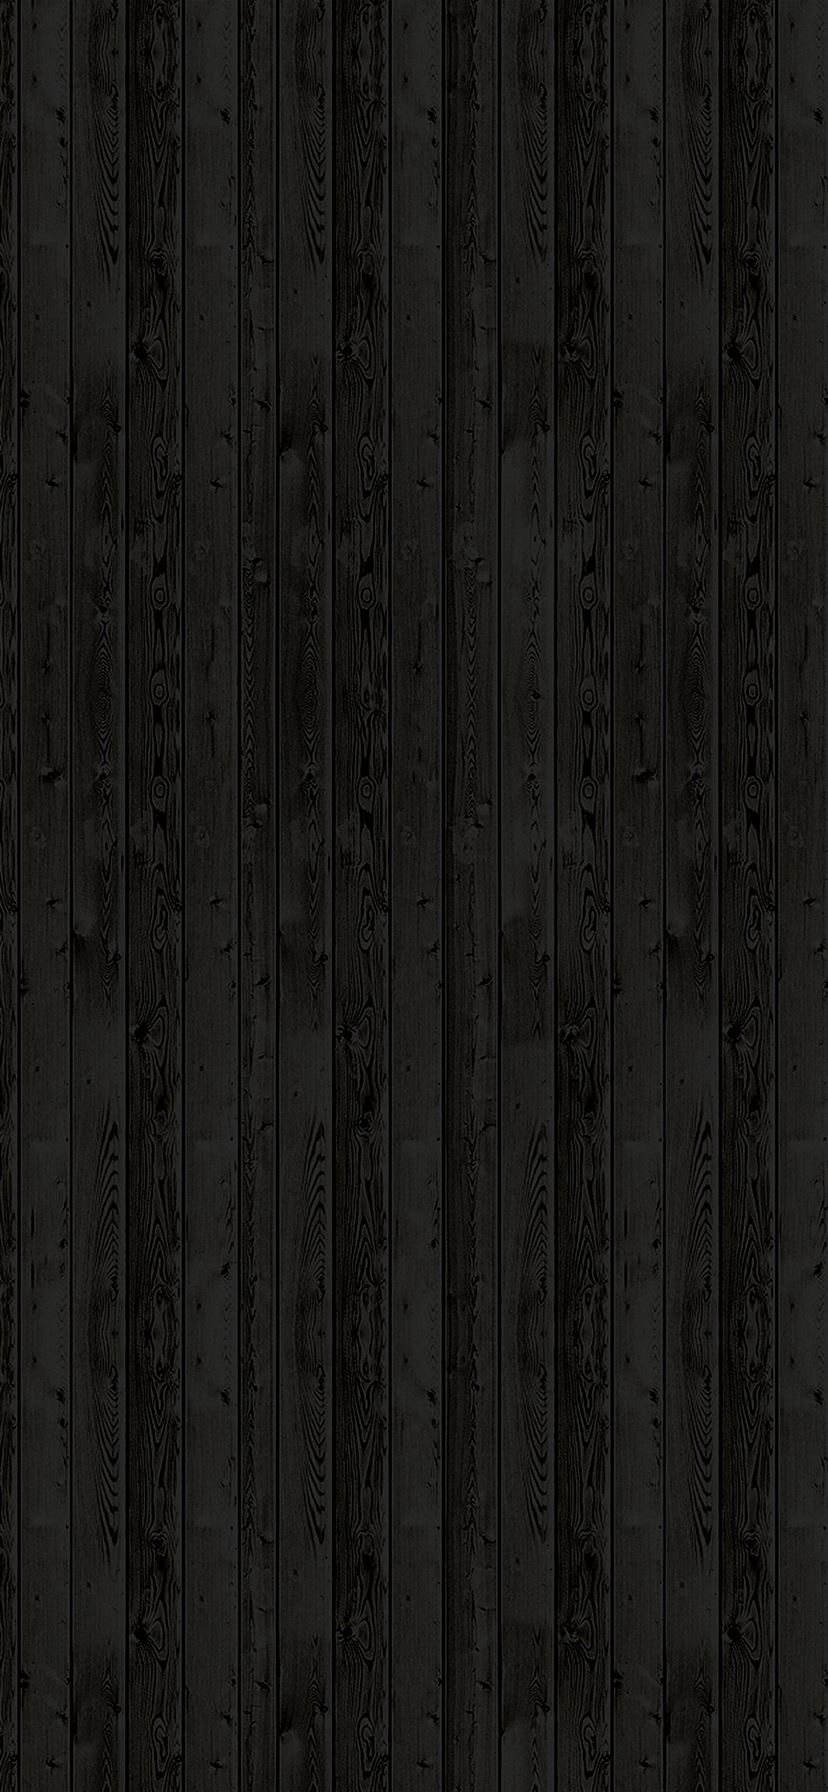 Wooden floor black pattern dark iPhone 11 Wallpapers Free Download